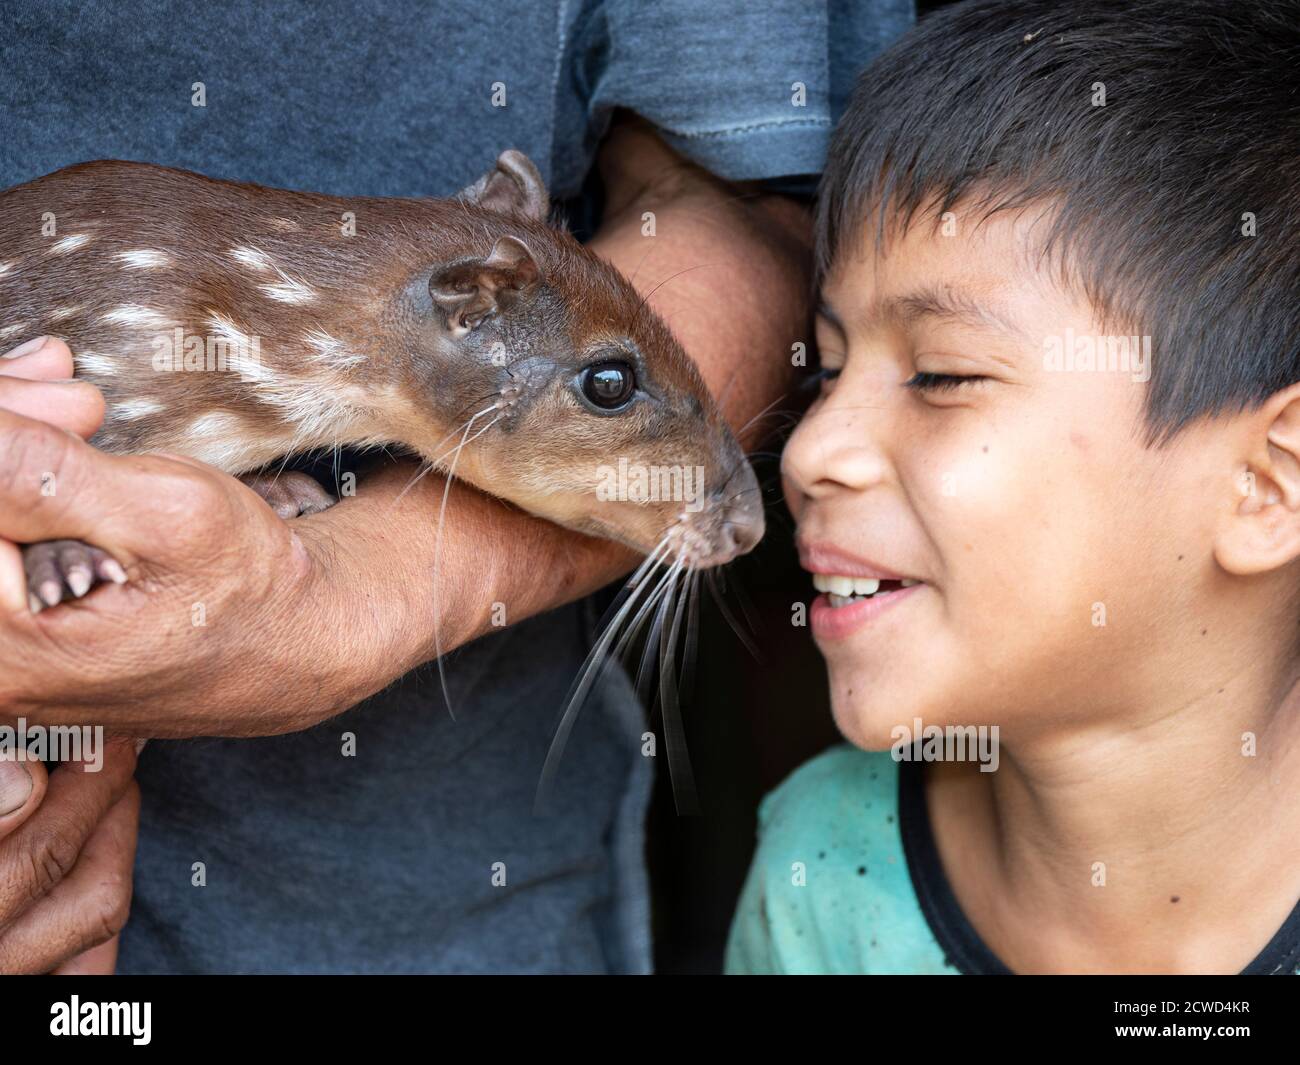 Ein kleiner Junge mit dem Familienhund, ein Agouti, Dasyprocta spp, in San Francisco Village, Amazonasbecken, Peru. Stockfoto